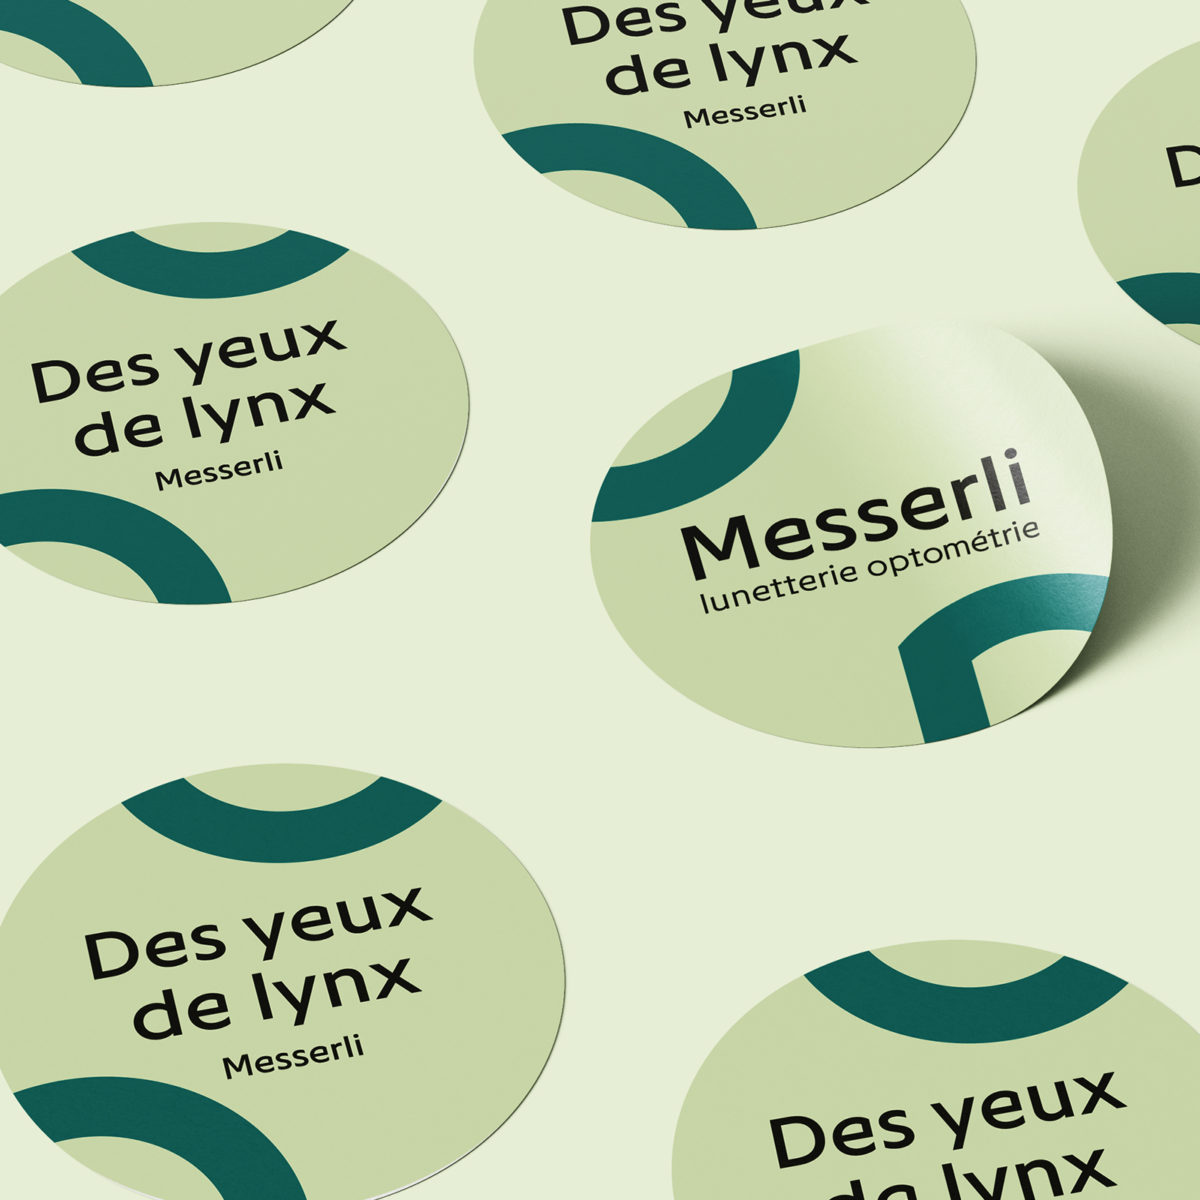 Logo Messerli sur une série de stickers ronds: "des yeux de lynx".